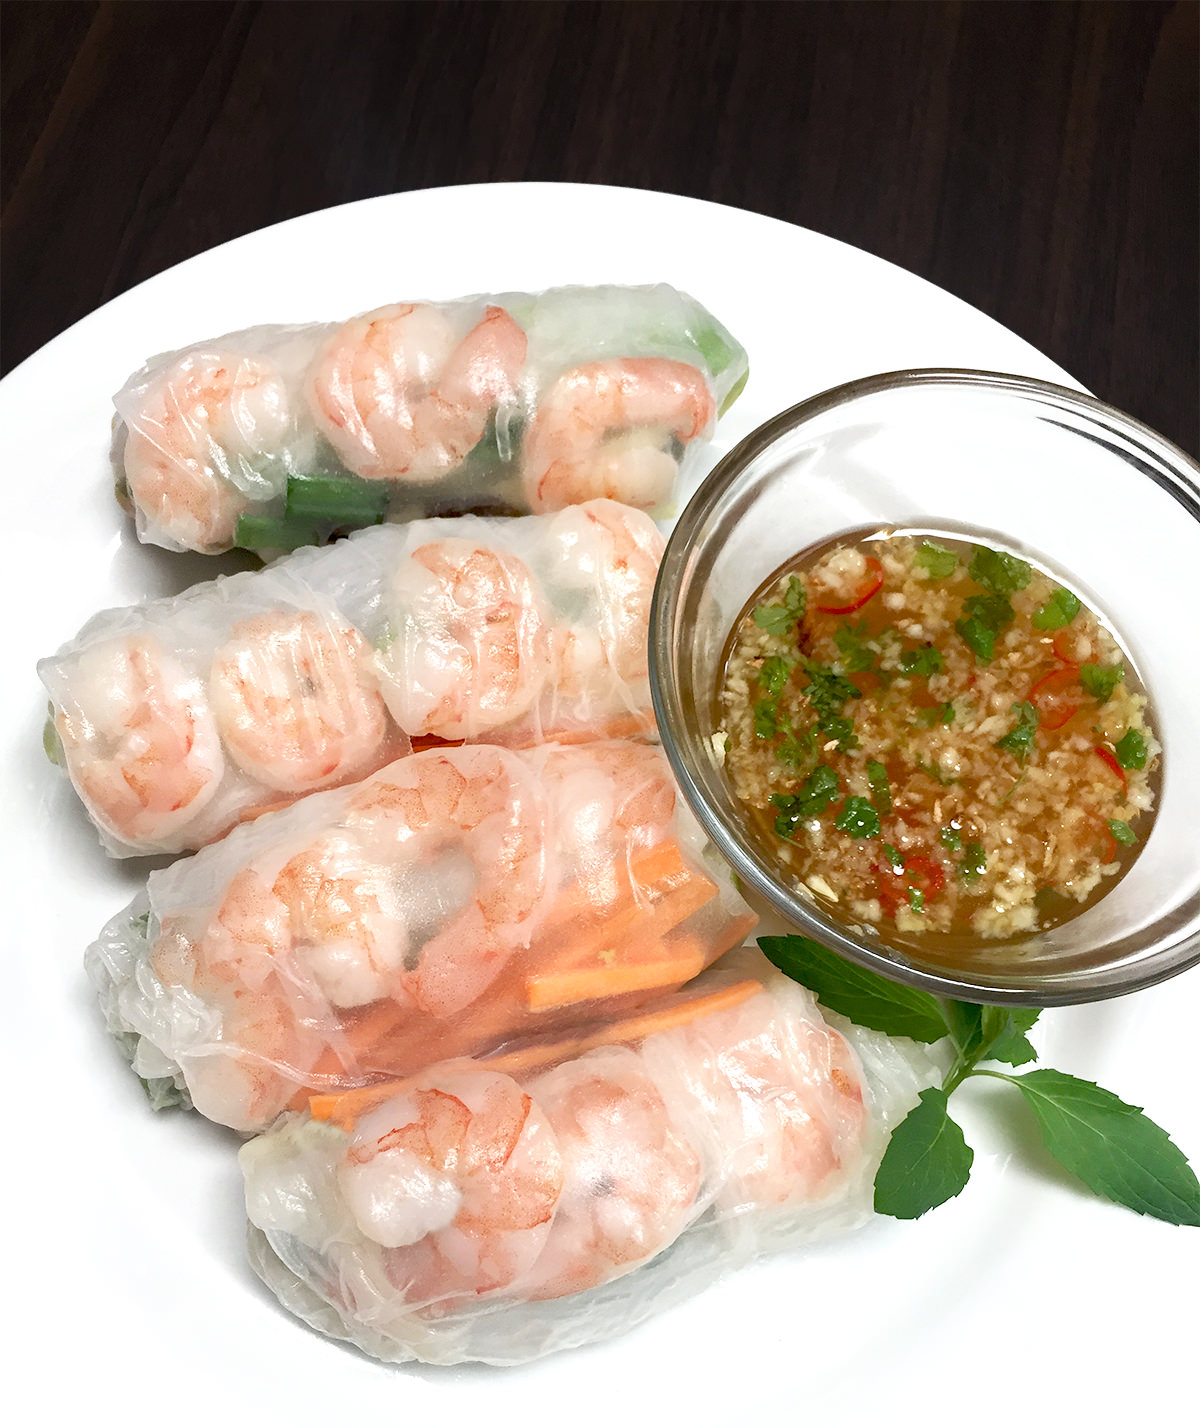 Rollitos vietnamitas: ideas de recetas saludables